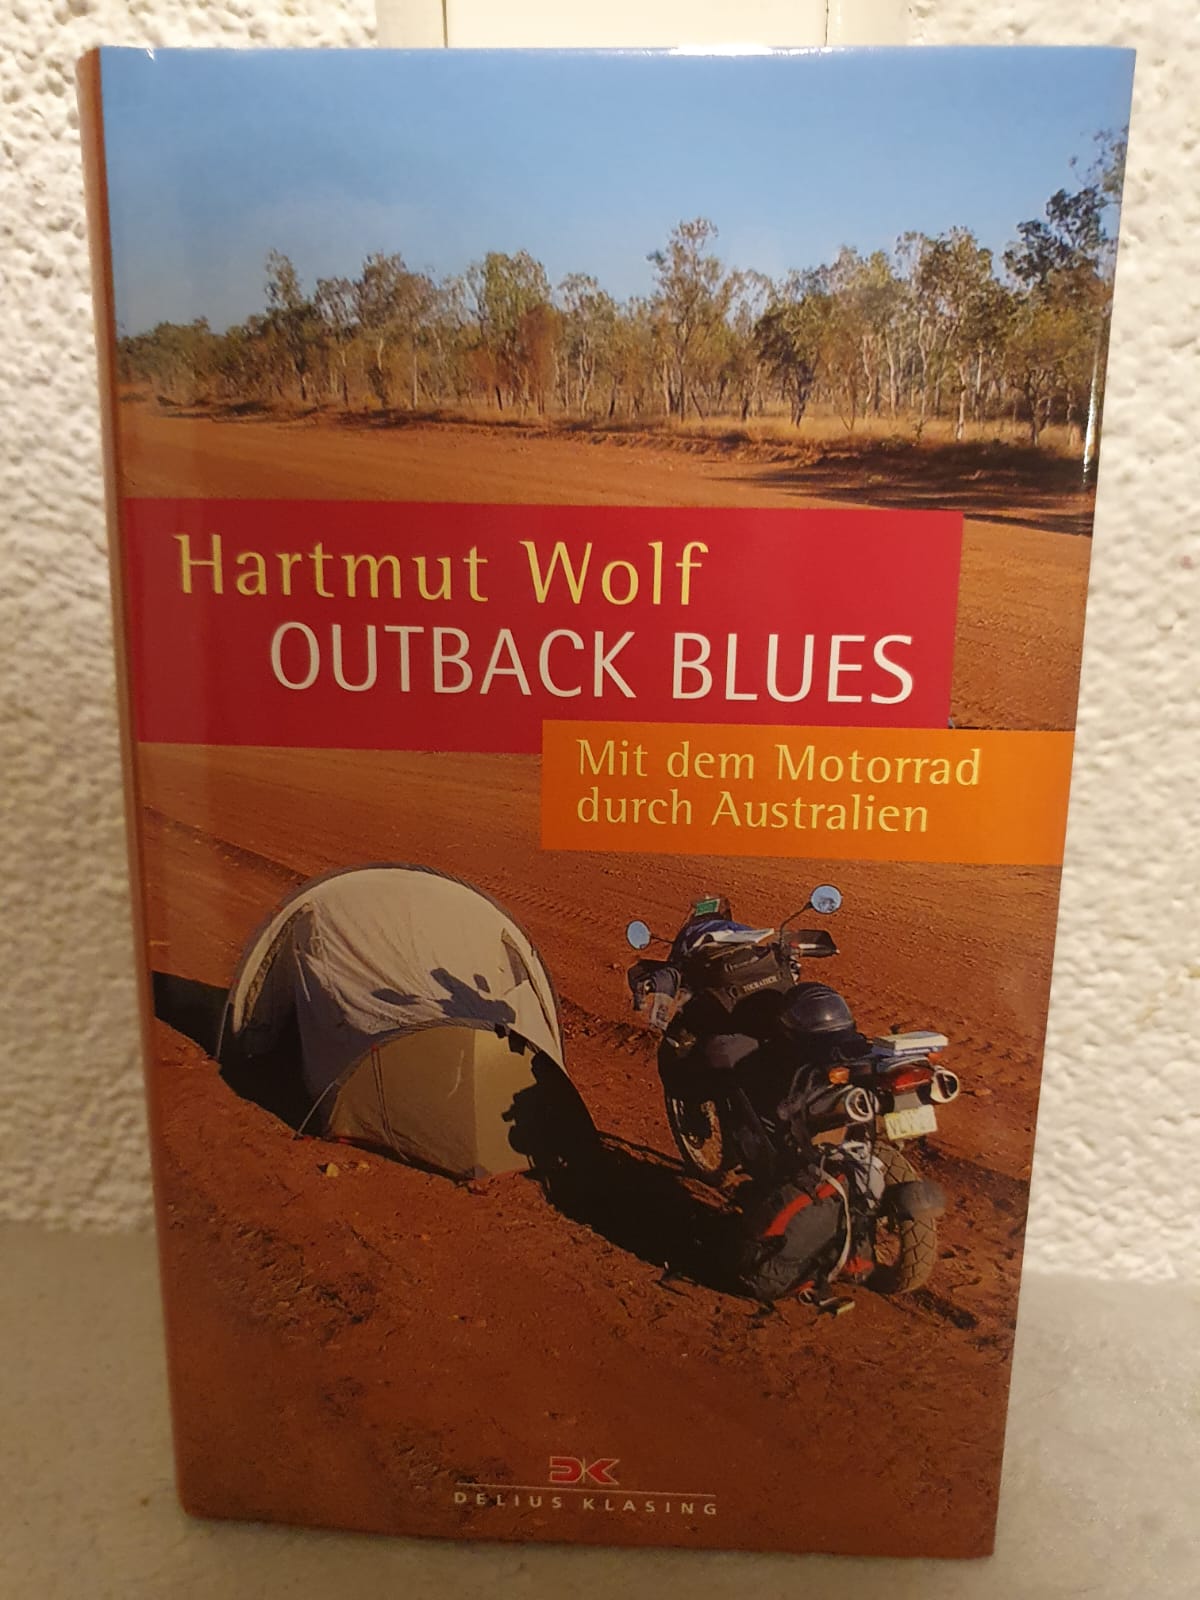 Outback Blues: Mit dem Motorrad durch Australien - Hartmut Wolf